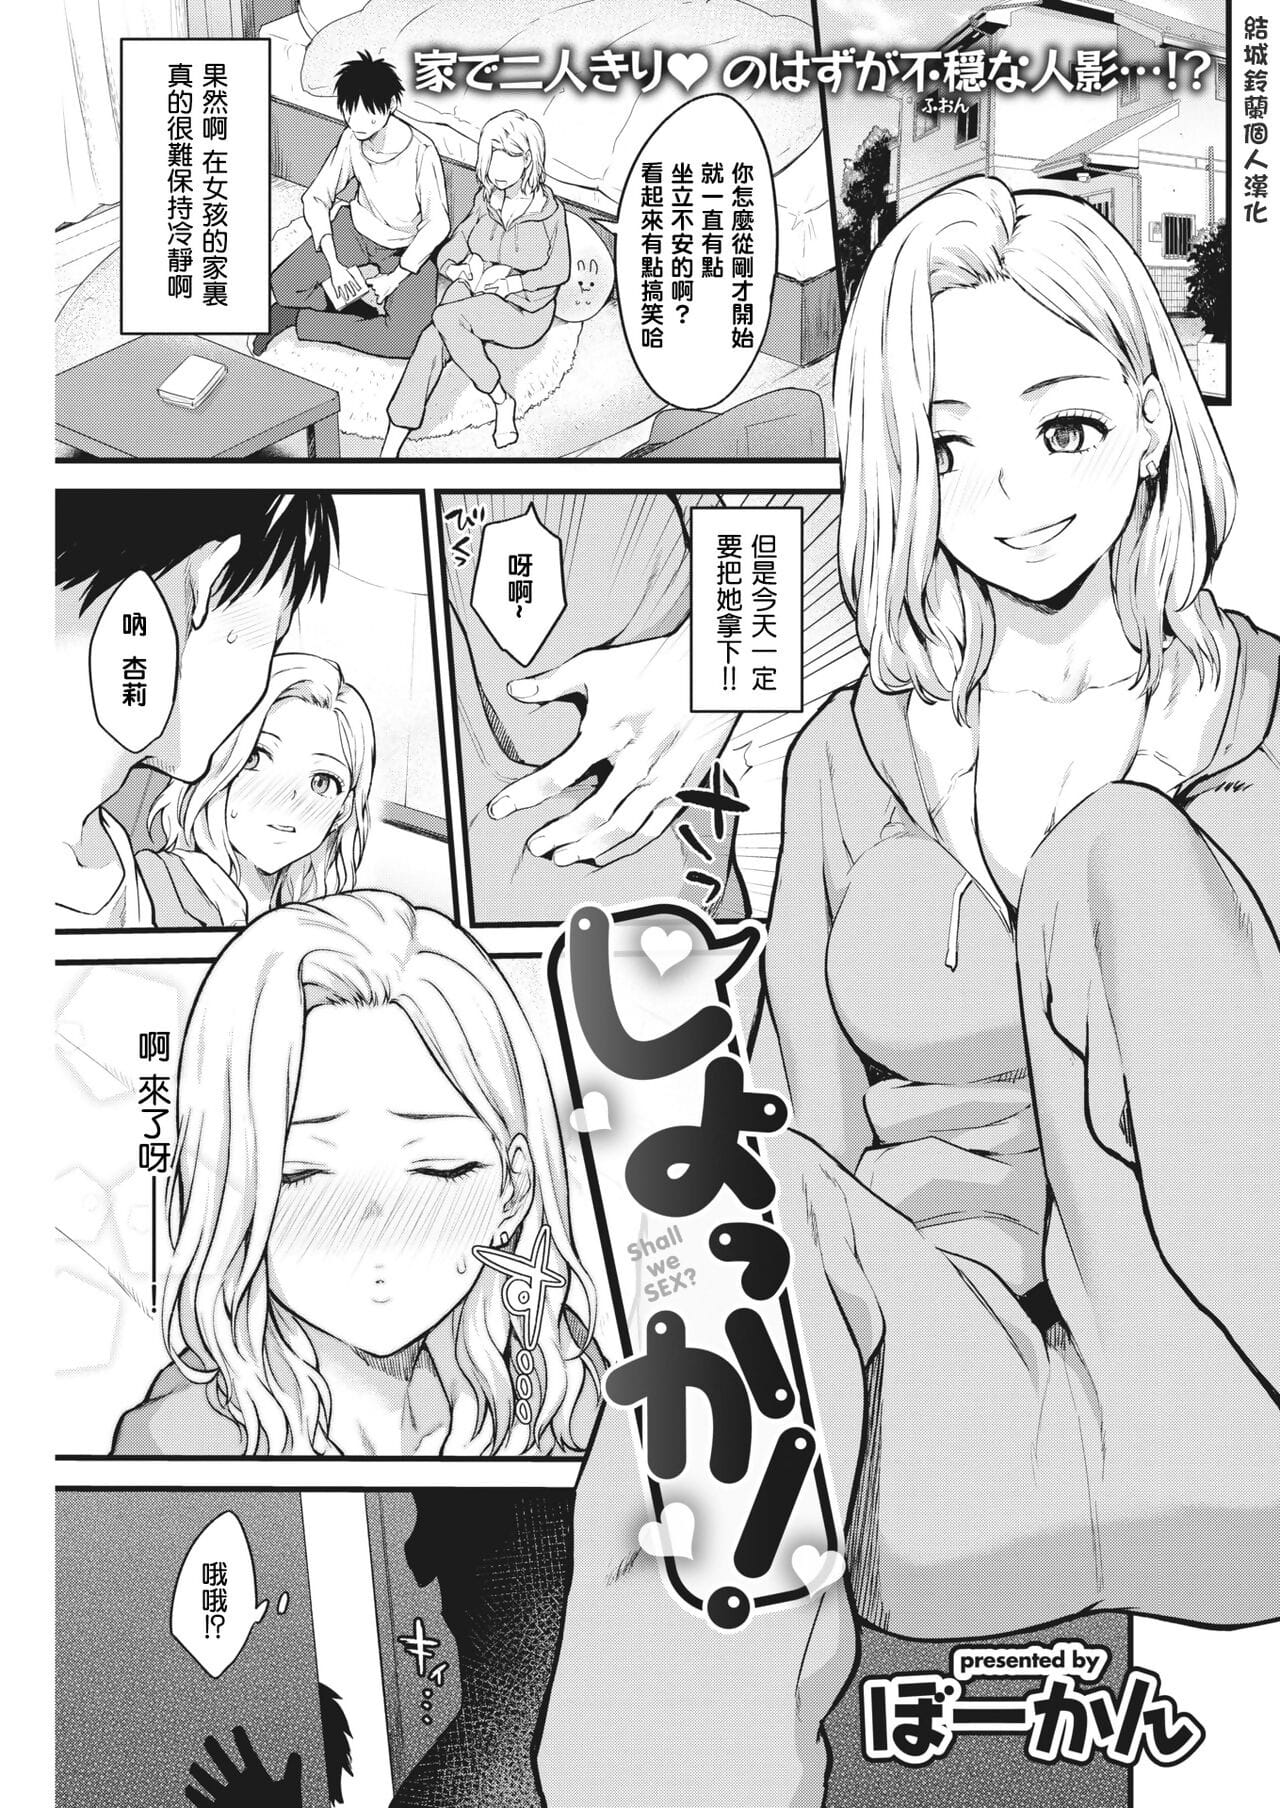 Shiyokka! page 1